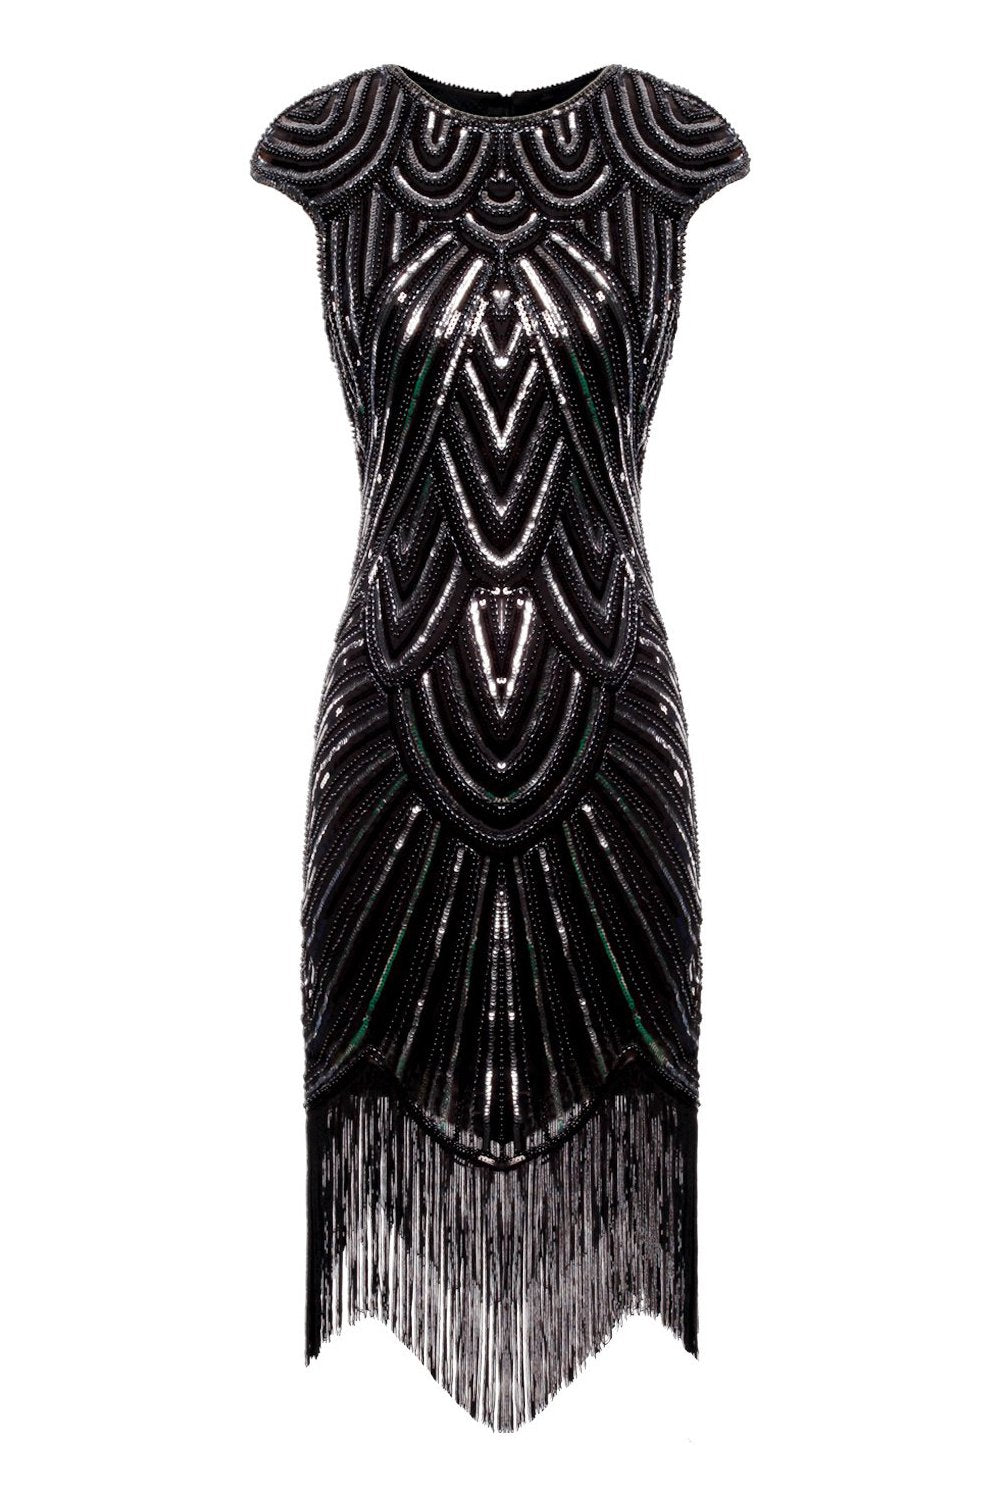 Robe 1920s Flapper avec Paillettes Noire